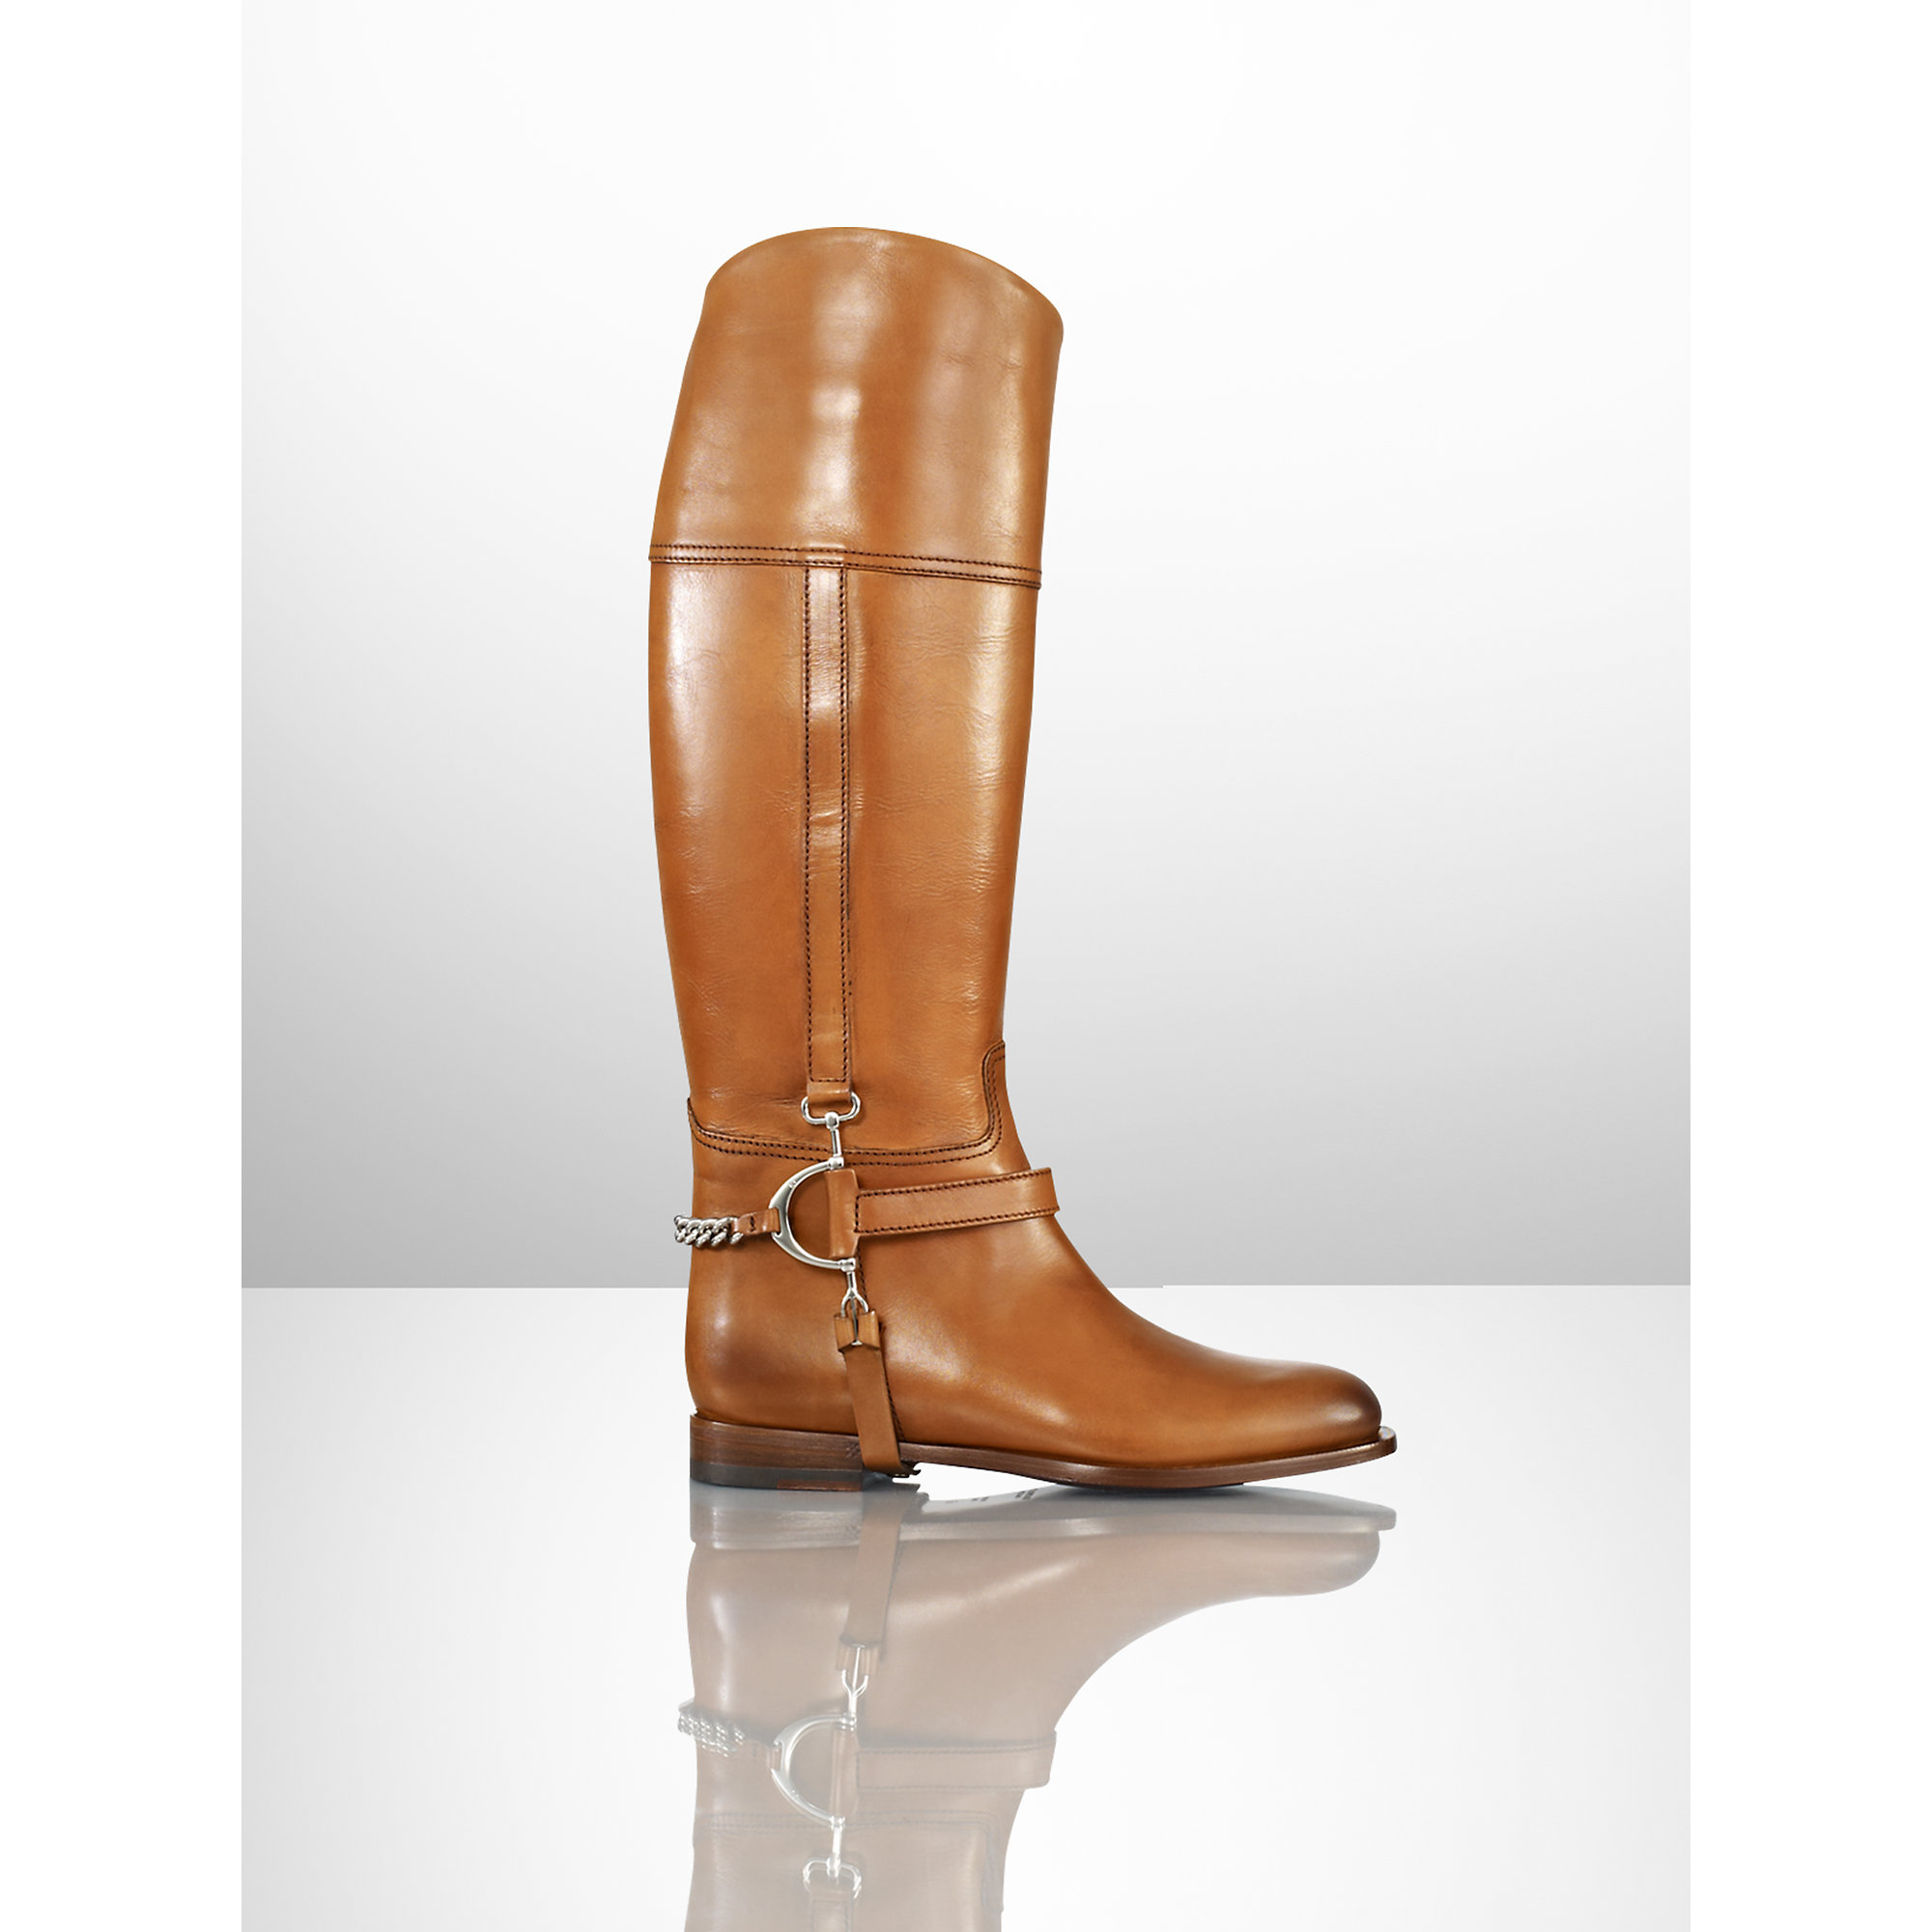 Ralph Lauren Women's Riding Boots Online, SAVE 39% - aveclumiere.com